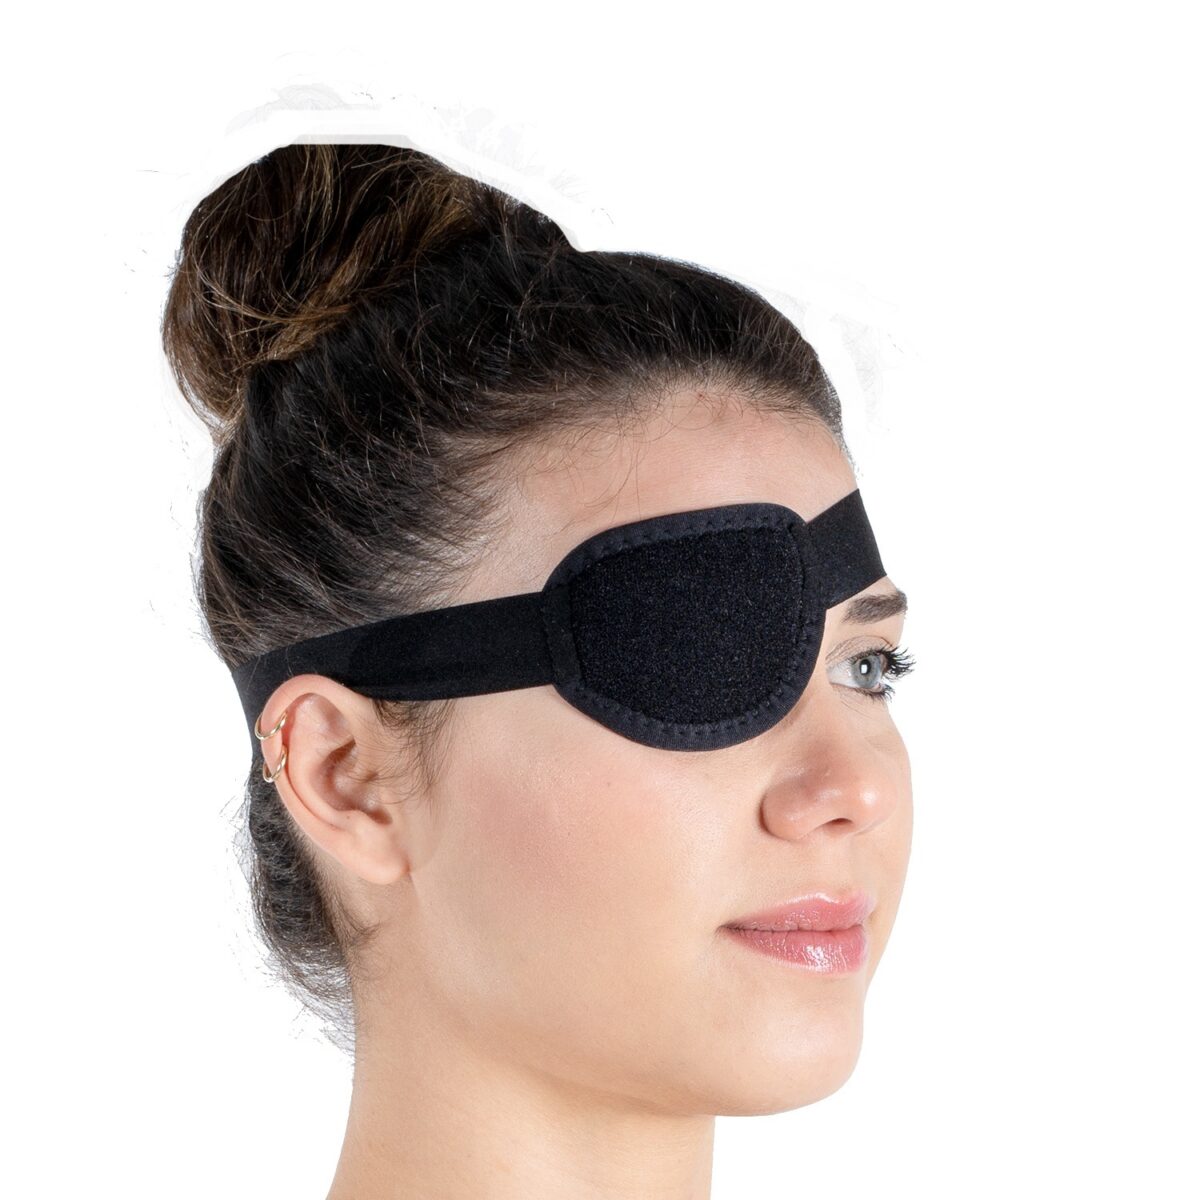 wingmed orthopedic equipments W1008 pirate eye bandage 42